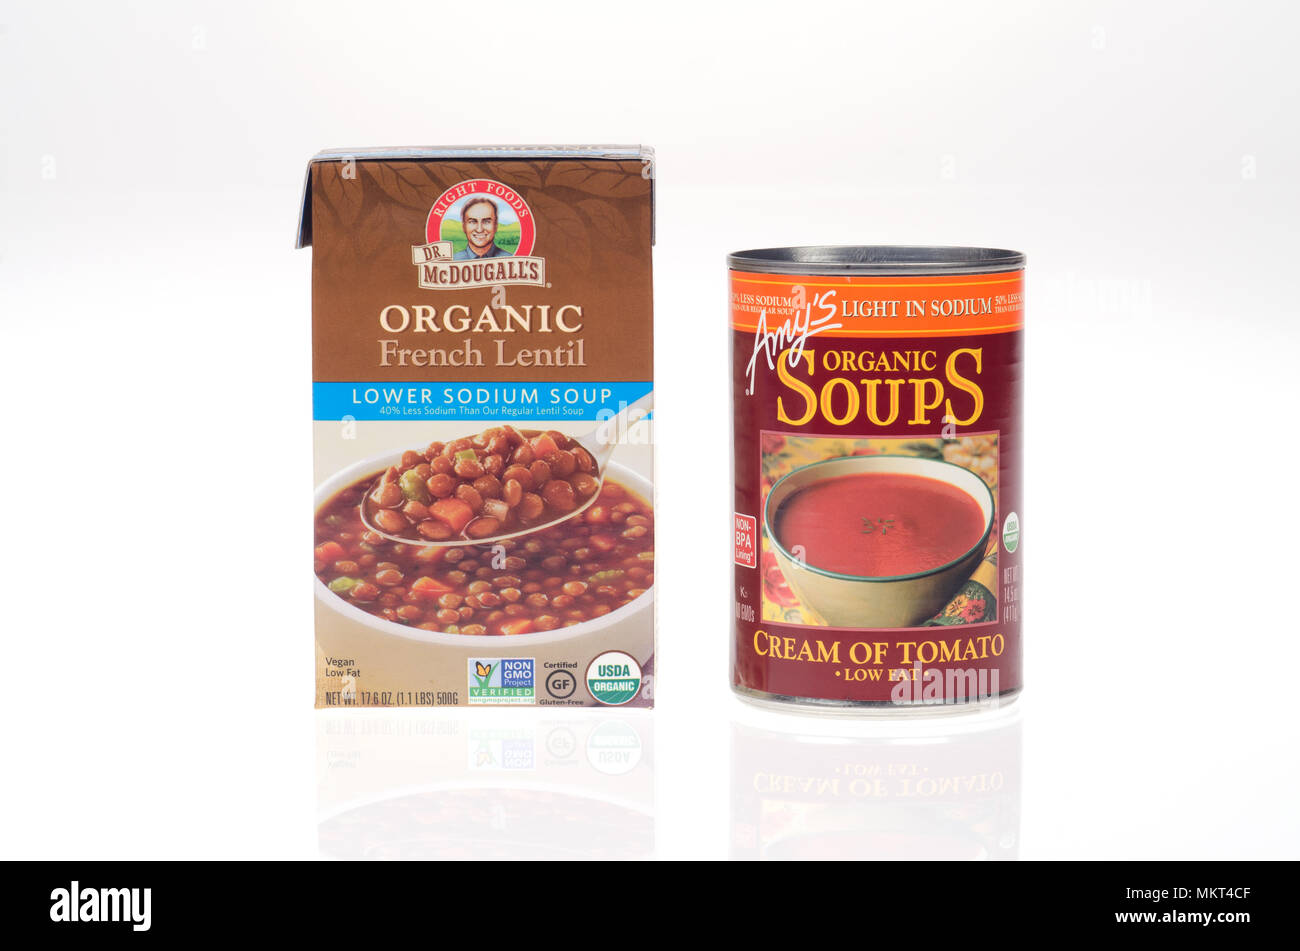 Organici di sodio inferiore zuppa può e scatola di Amy la crema di pomodoro e il dottor McDougall della lenticchia francese Foto Stock